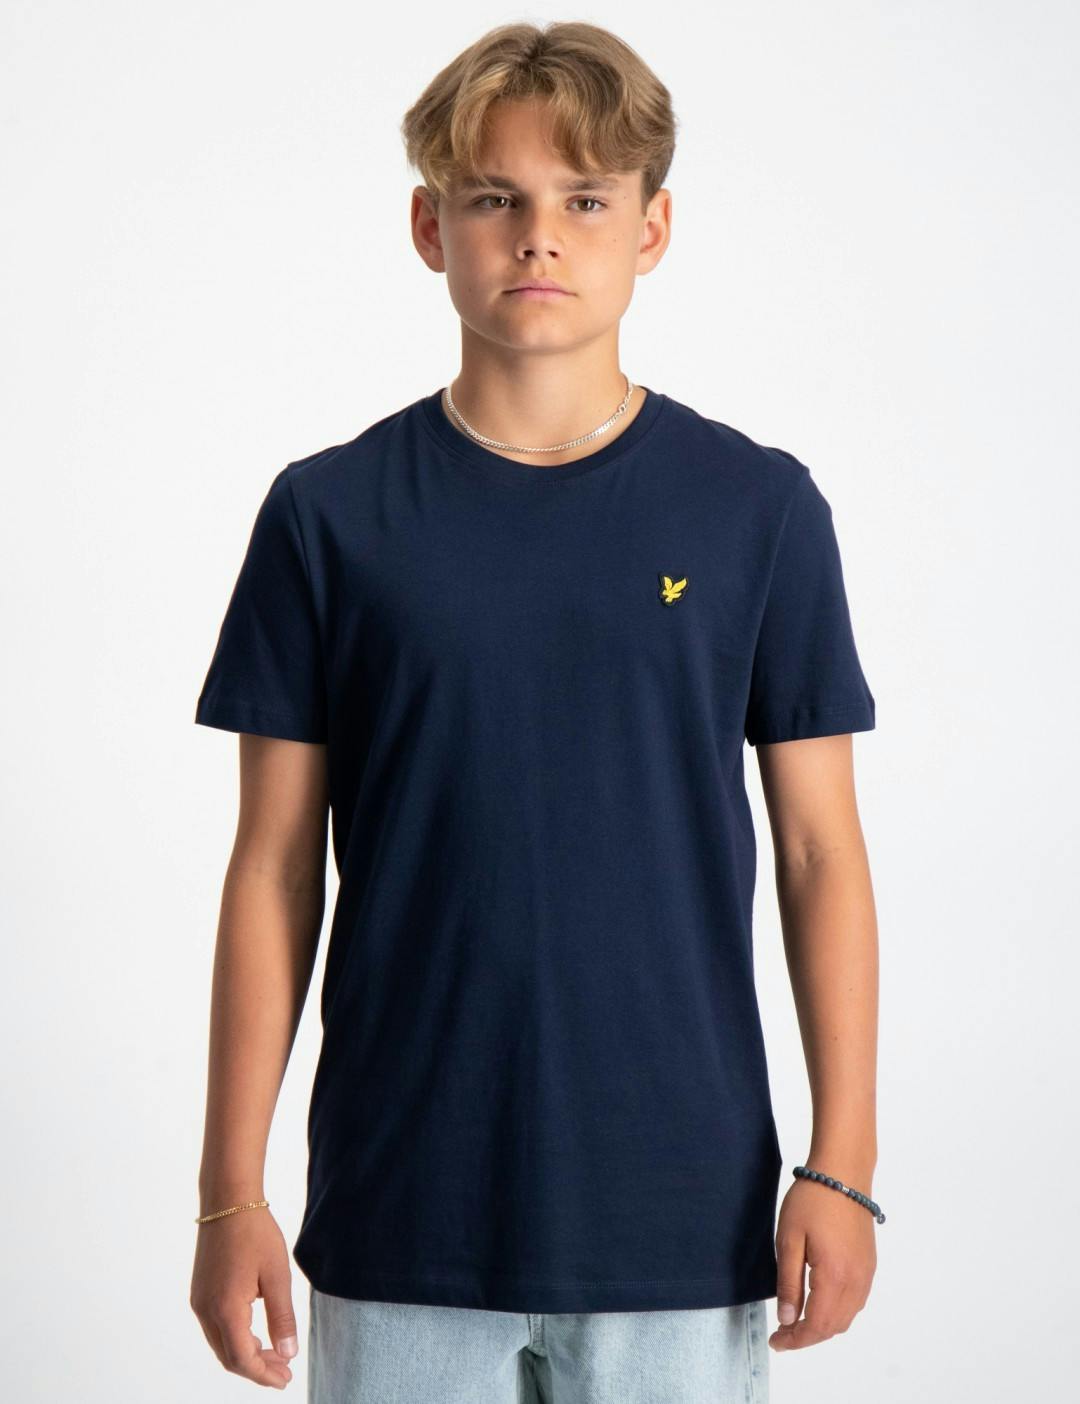 vragenlijst Vervreemden Vergelijken Blauw Classic T-Shirt voor Jongens | Kids Brand Store